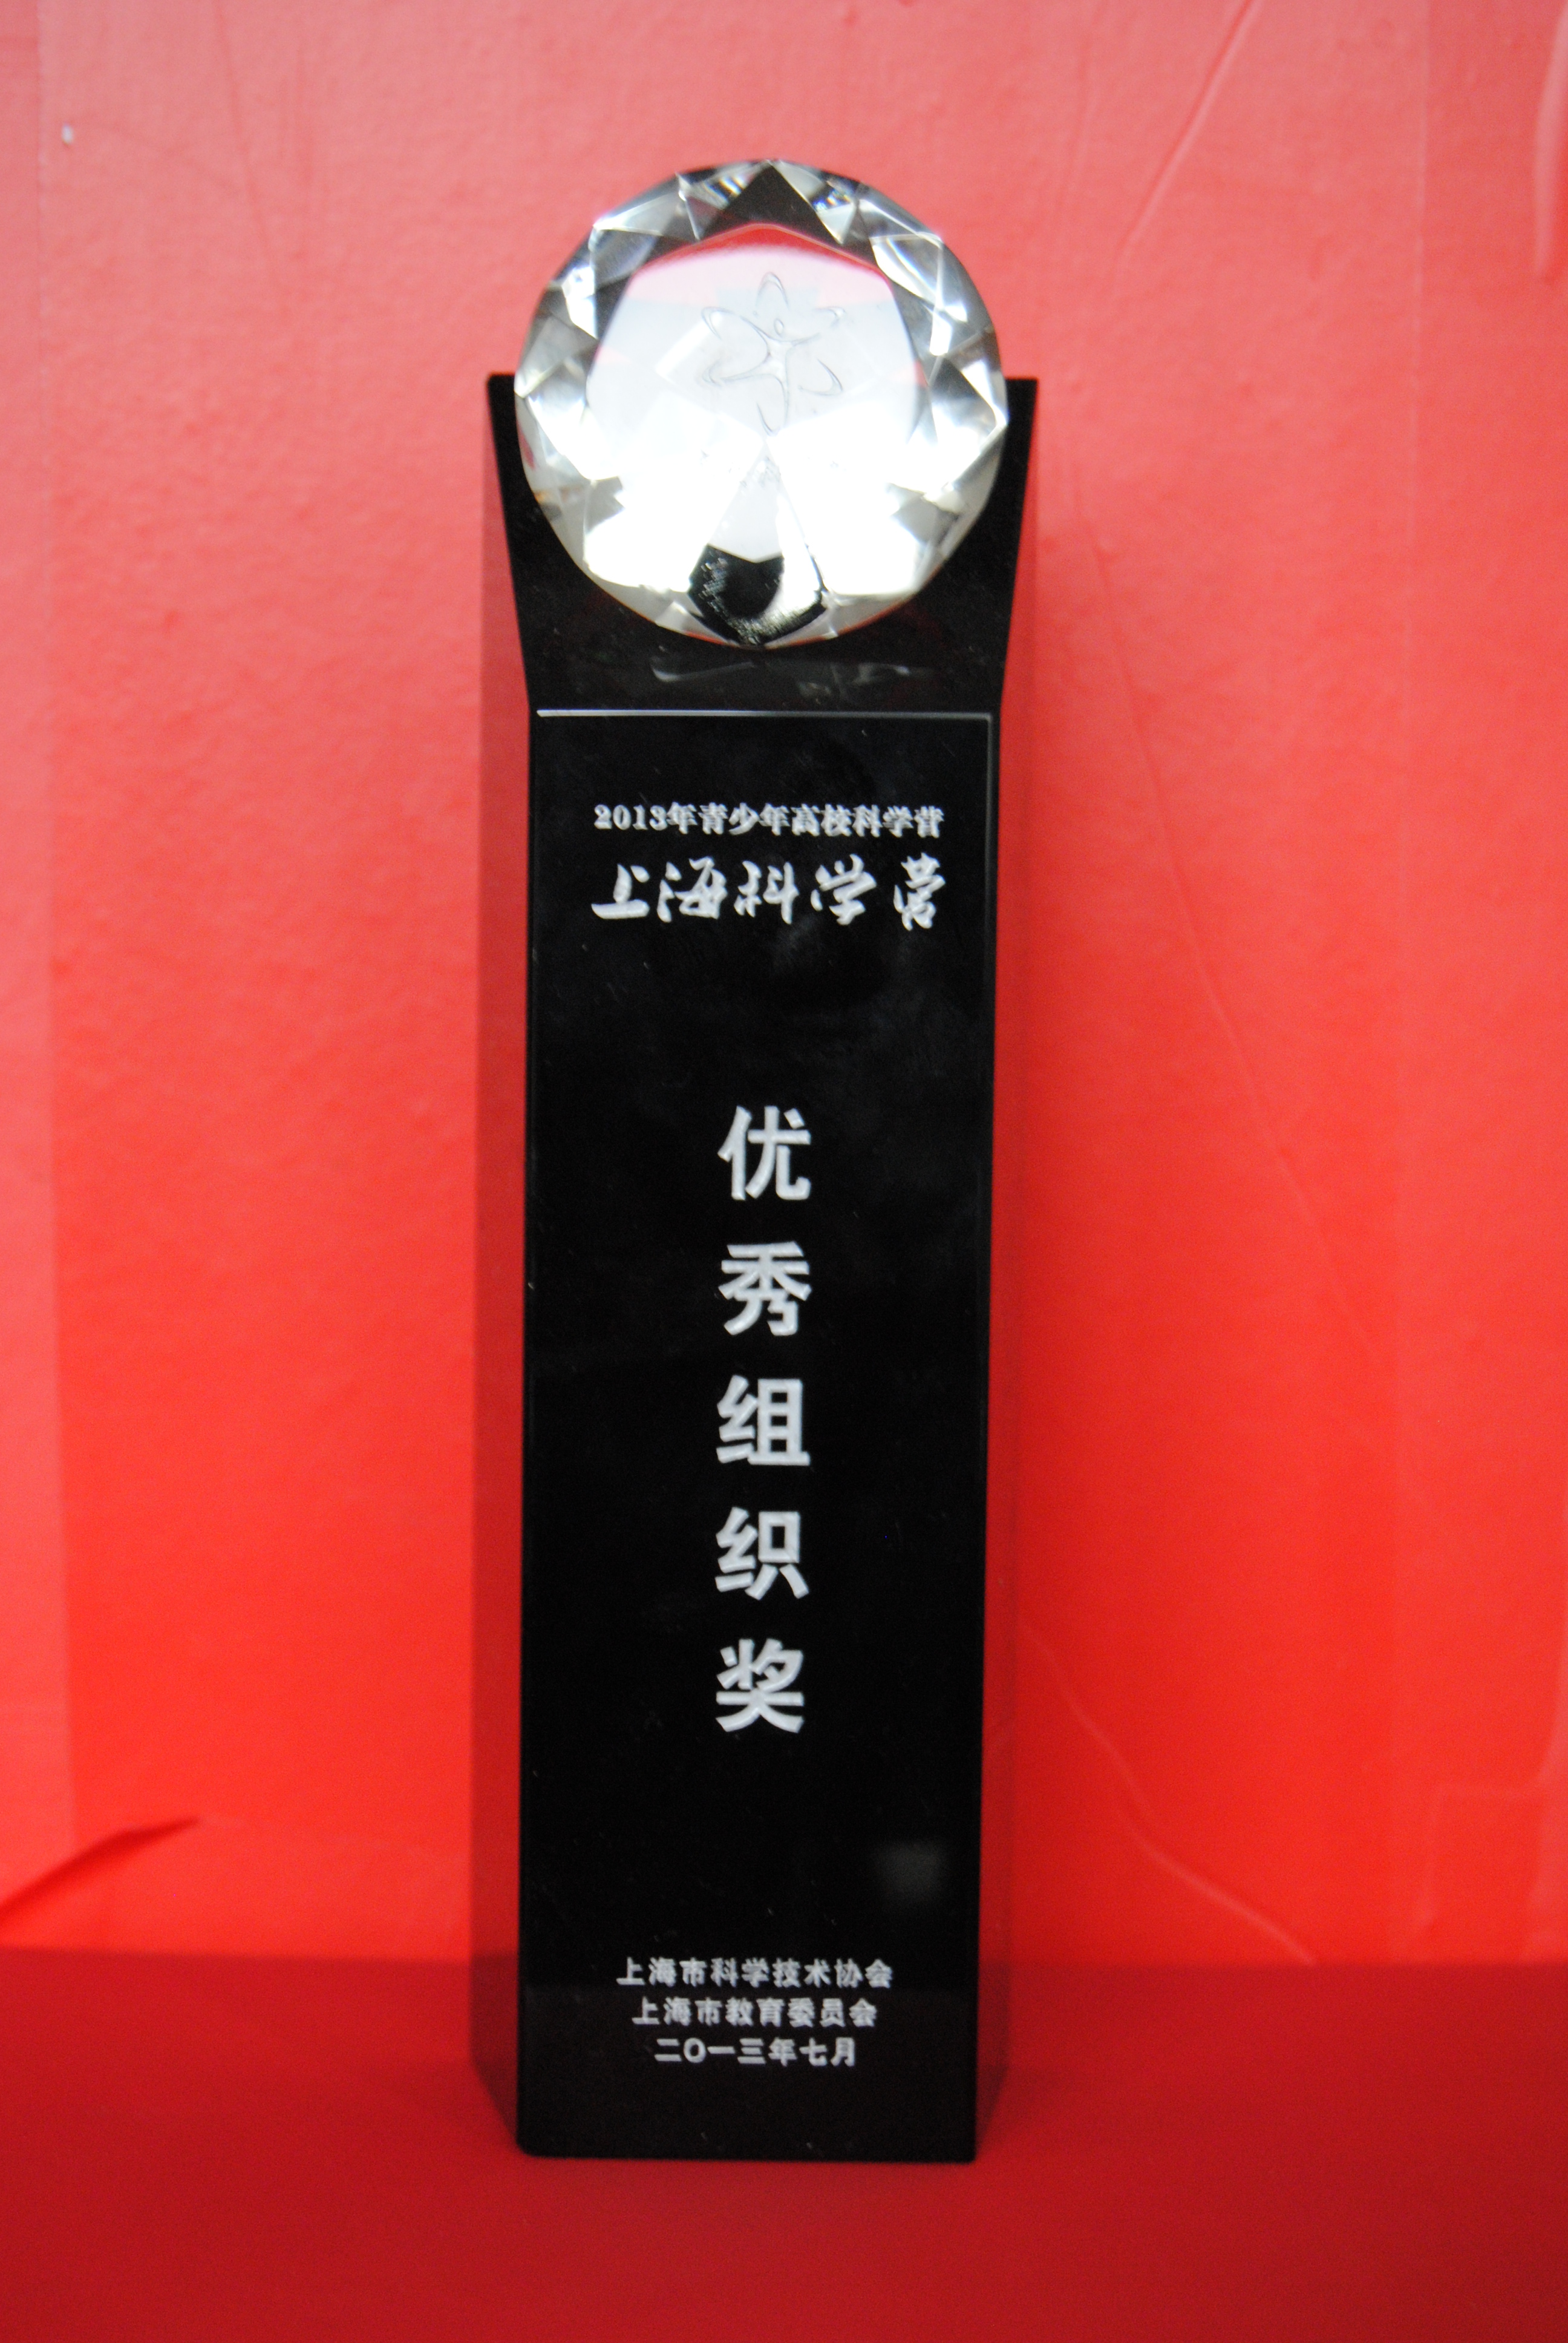 2013青少年高校科学营上海科学营优秀组织奖